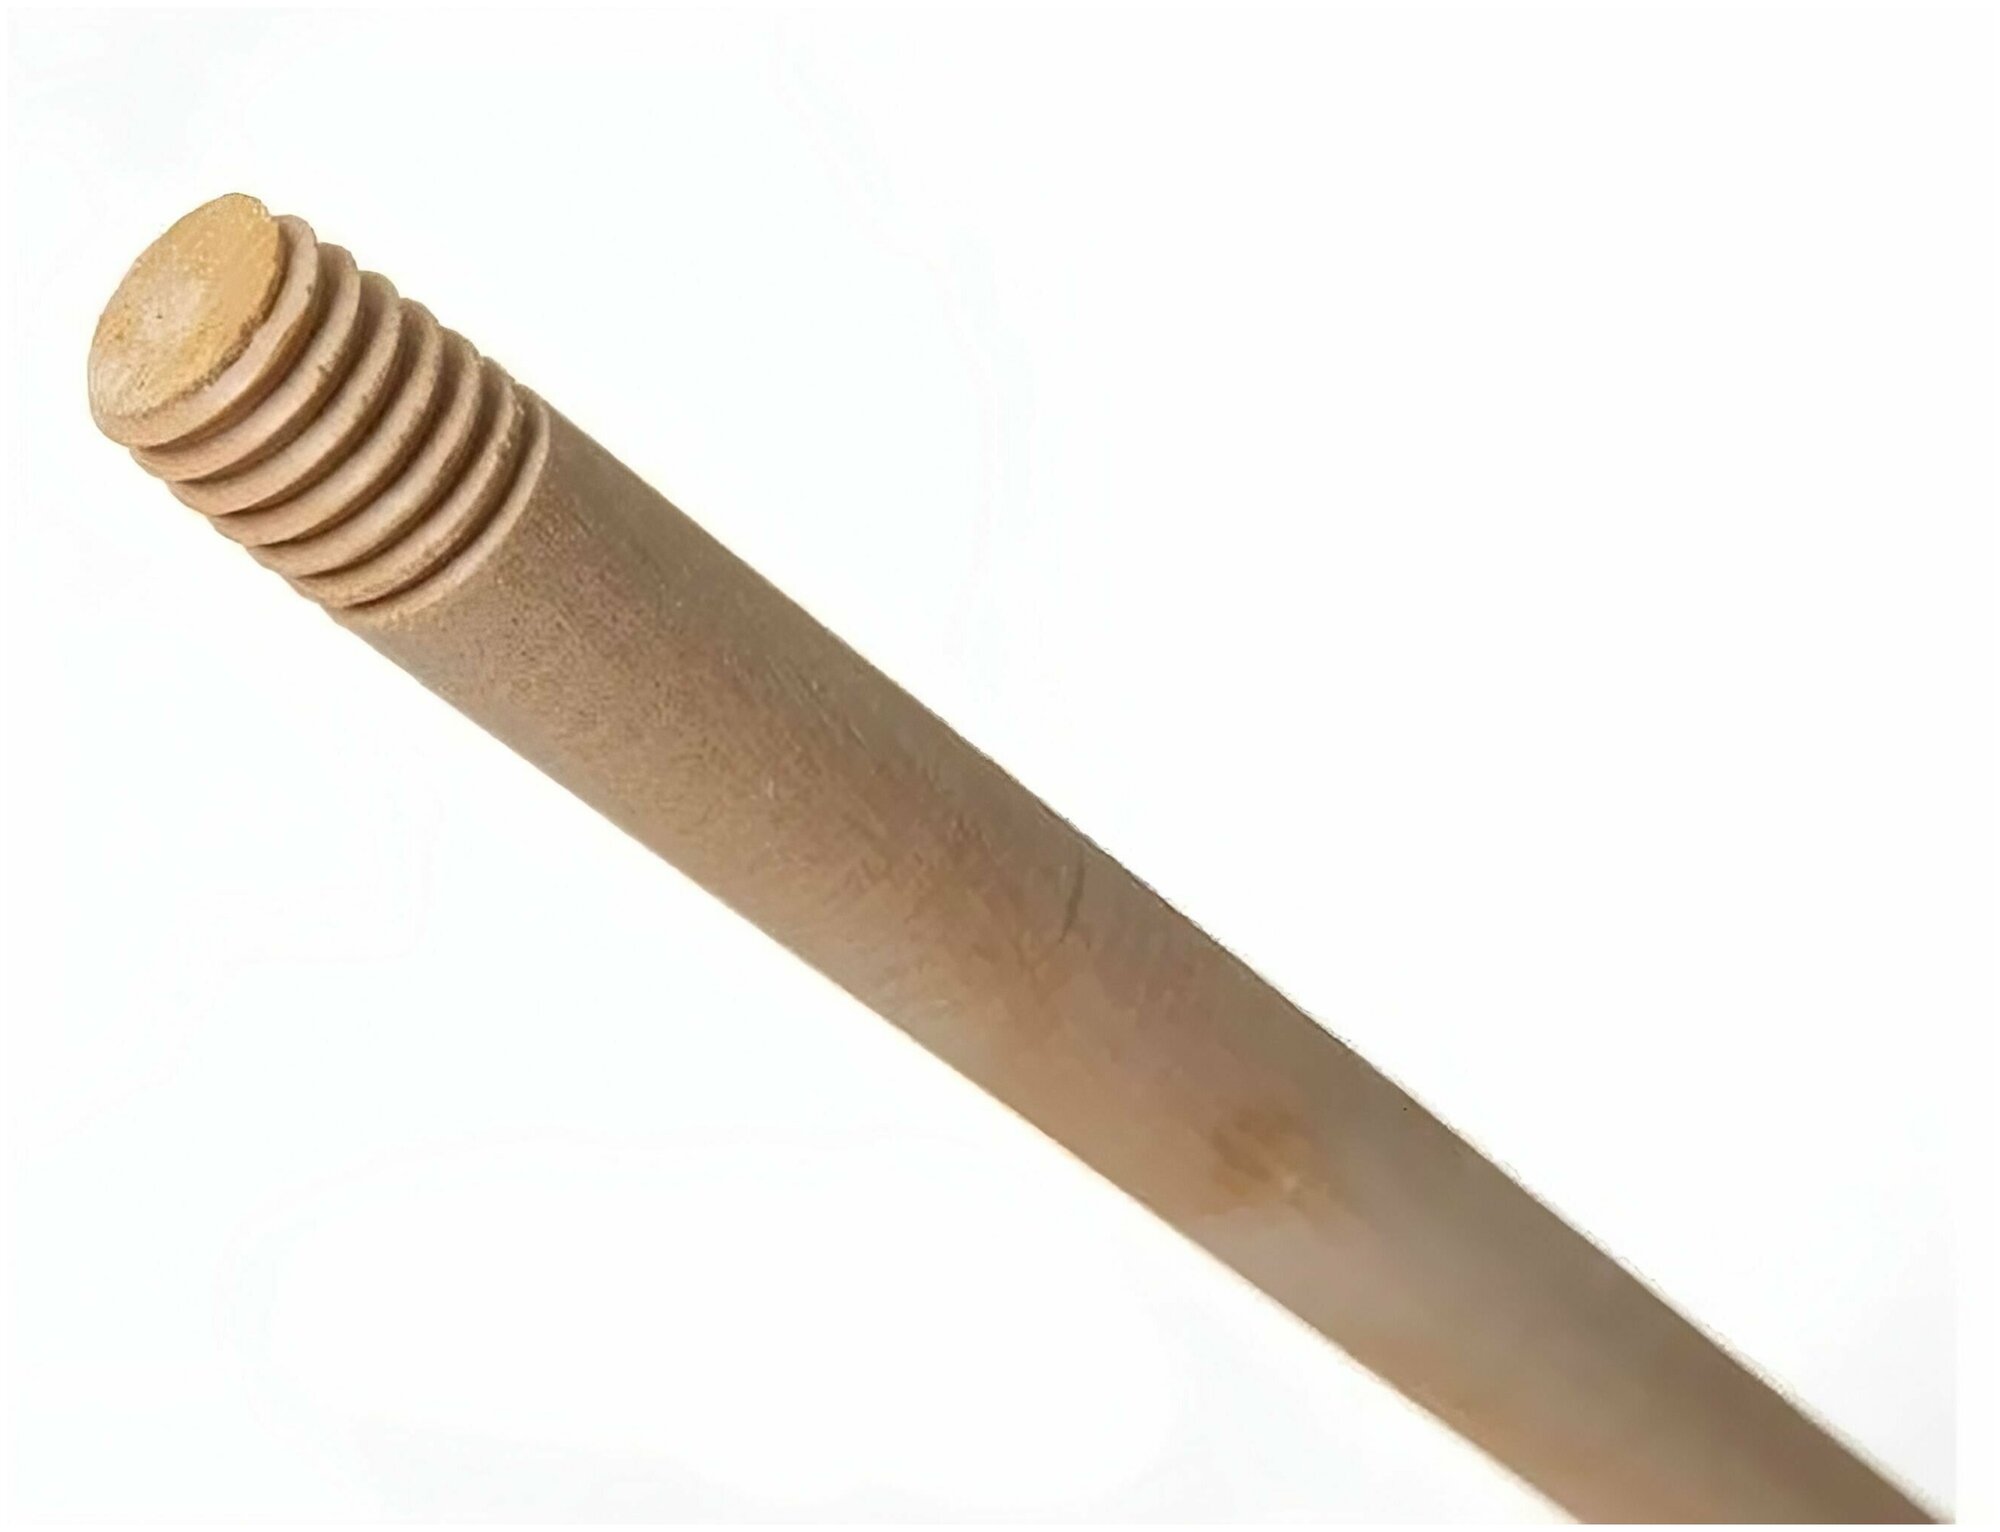 Черенок высший сорт, диаметр 2.5 см с резьбой (5 шт) - надёжная и удобная рукоятка для садового инструмента, выполненная из натуральной древесины. - фотография № 4